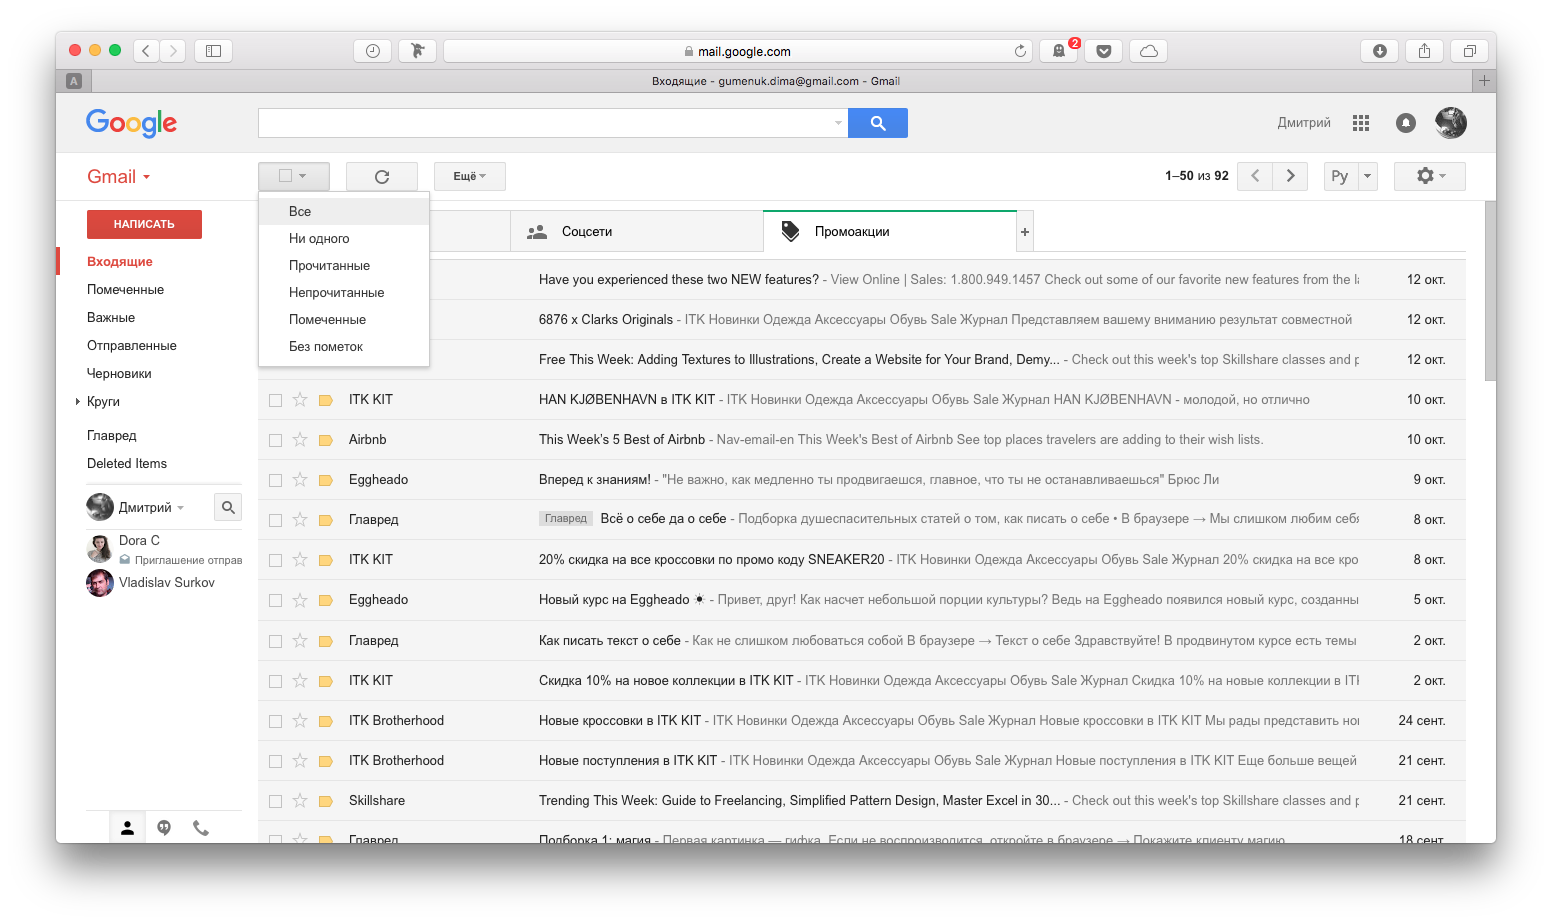 Как сразу отметить все письма gmail как прочитанные? пошаговое руководство